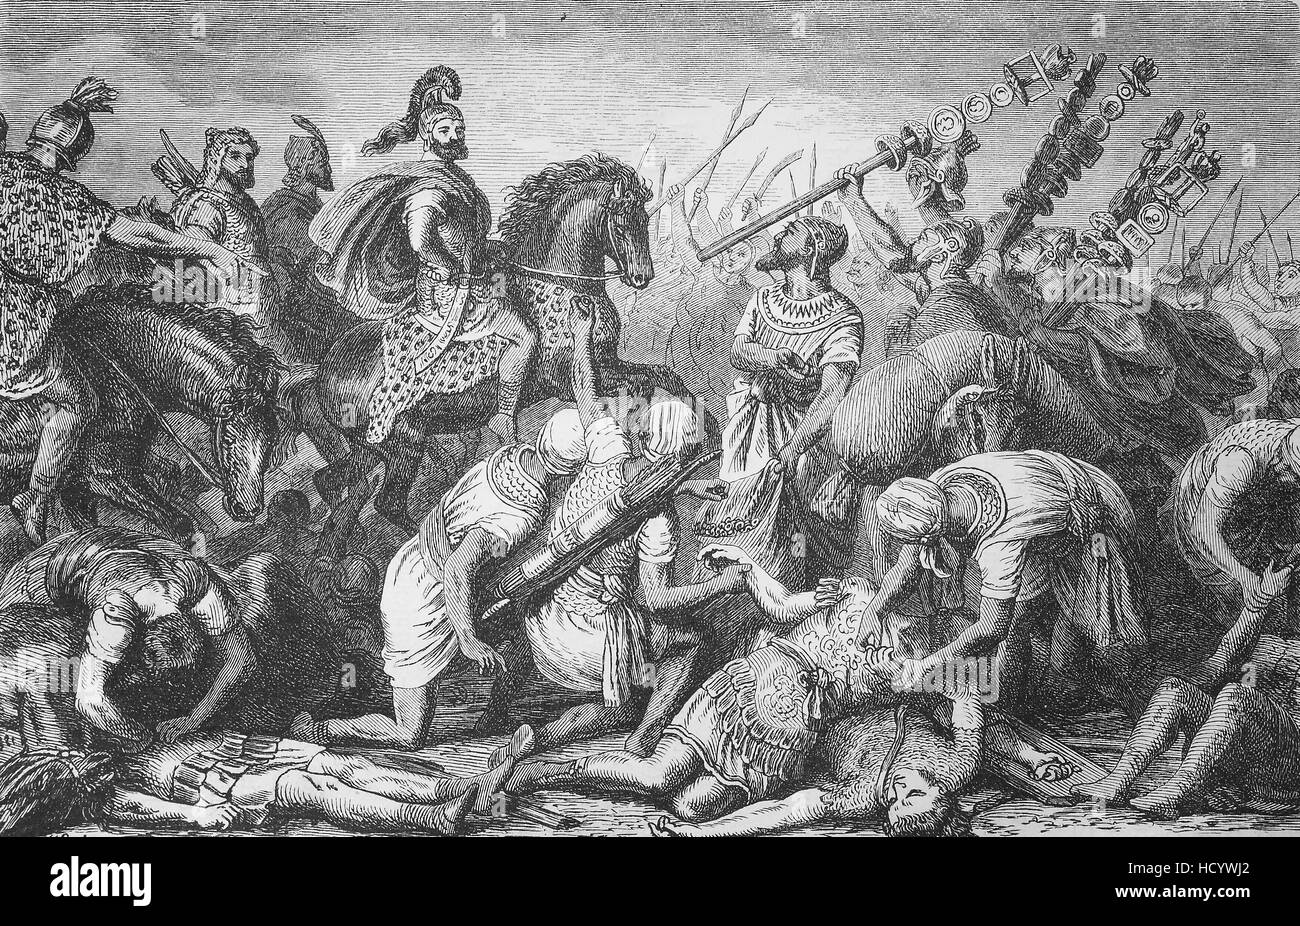 Zweiten Punischen Krieg, der Hannibalic Krieg, Schlacht von Casilinum, Italien, römische Opfer beraubt ihre Ornamente, die Geschichte des antiken Rom, Römisches Reich Stockfoto